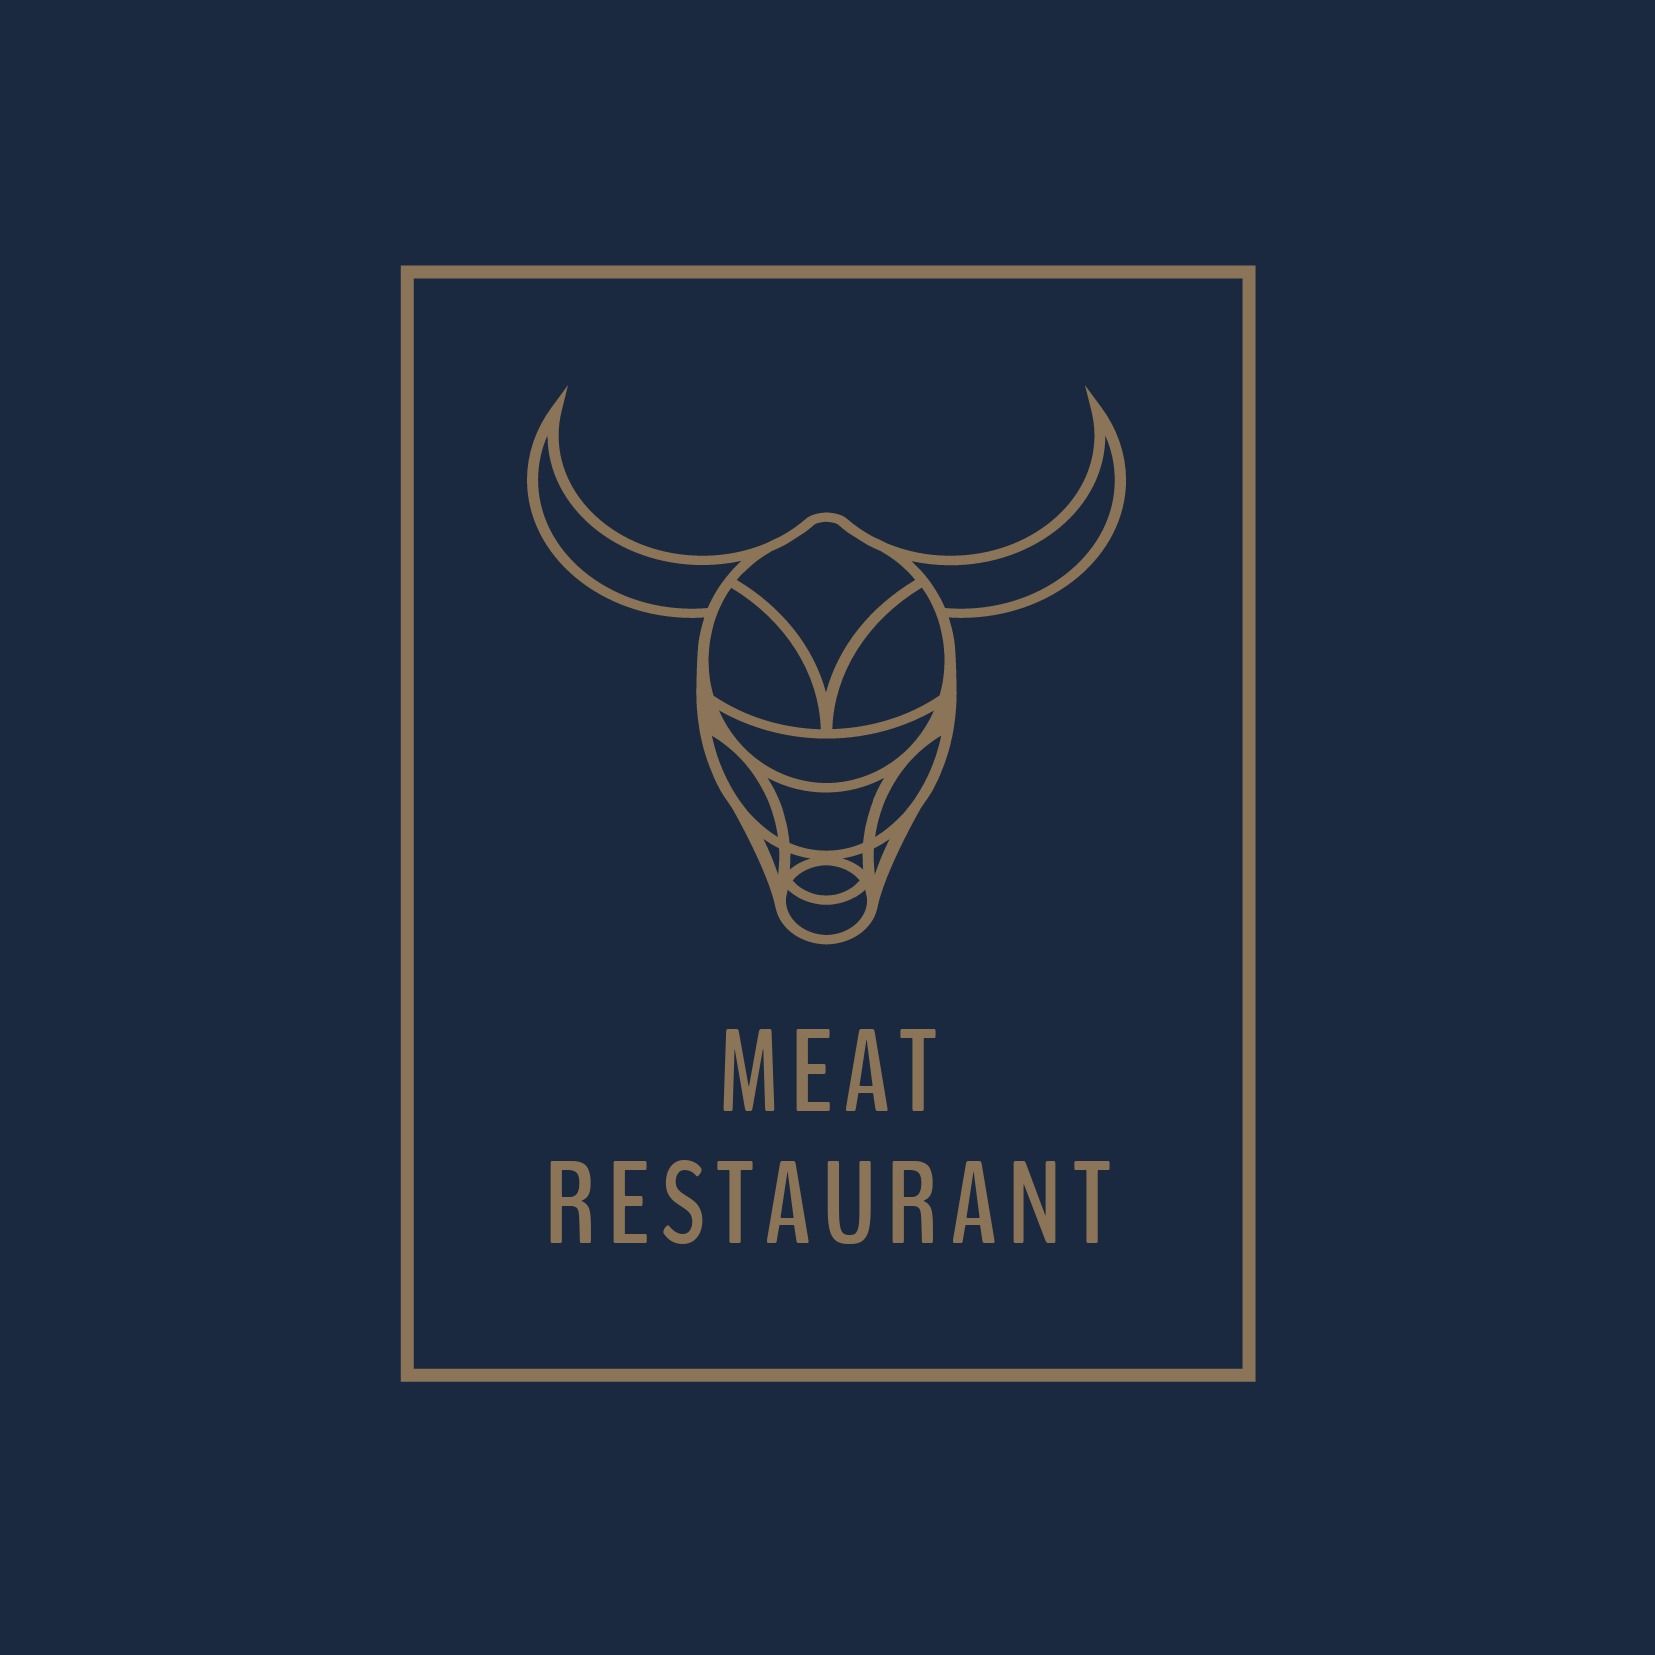 Logo pour un restaurant de viande avec une tête de taureau - BenchNine est une police étroite mais forte et percutante - Image